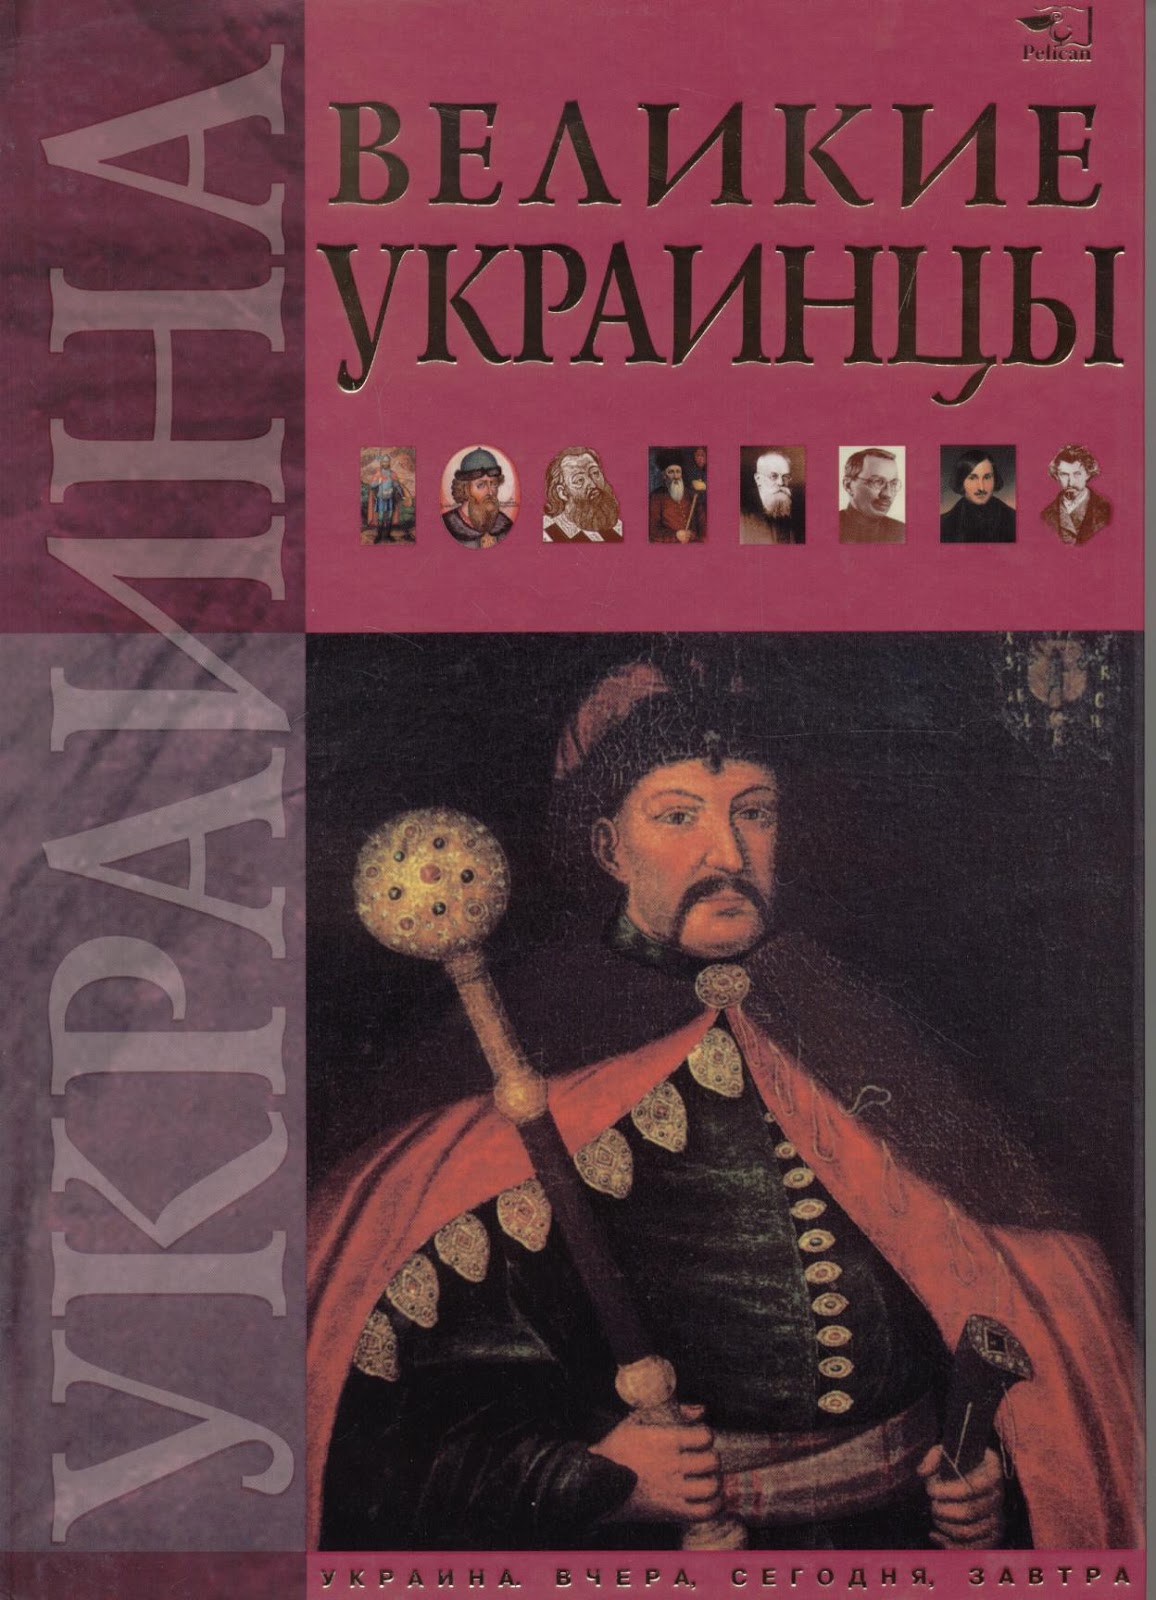 Книга хохлы. Великие украинцы. СТО великих украинцев список. СТО великих украинцев книжко. Великие украинцы в истории.